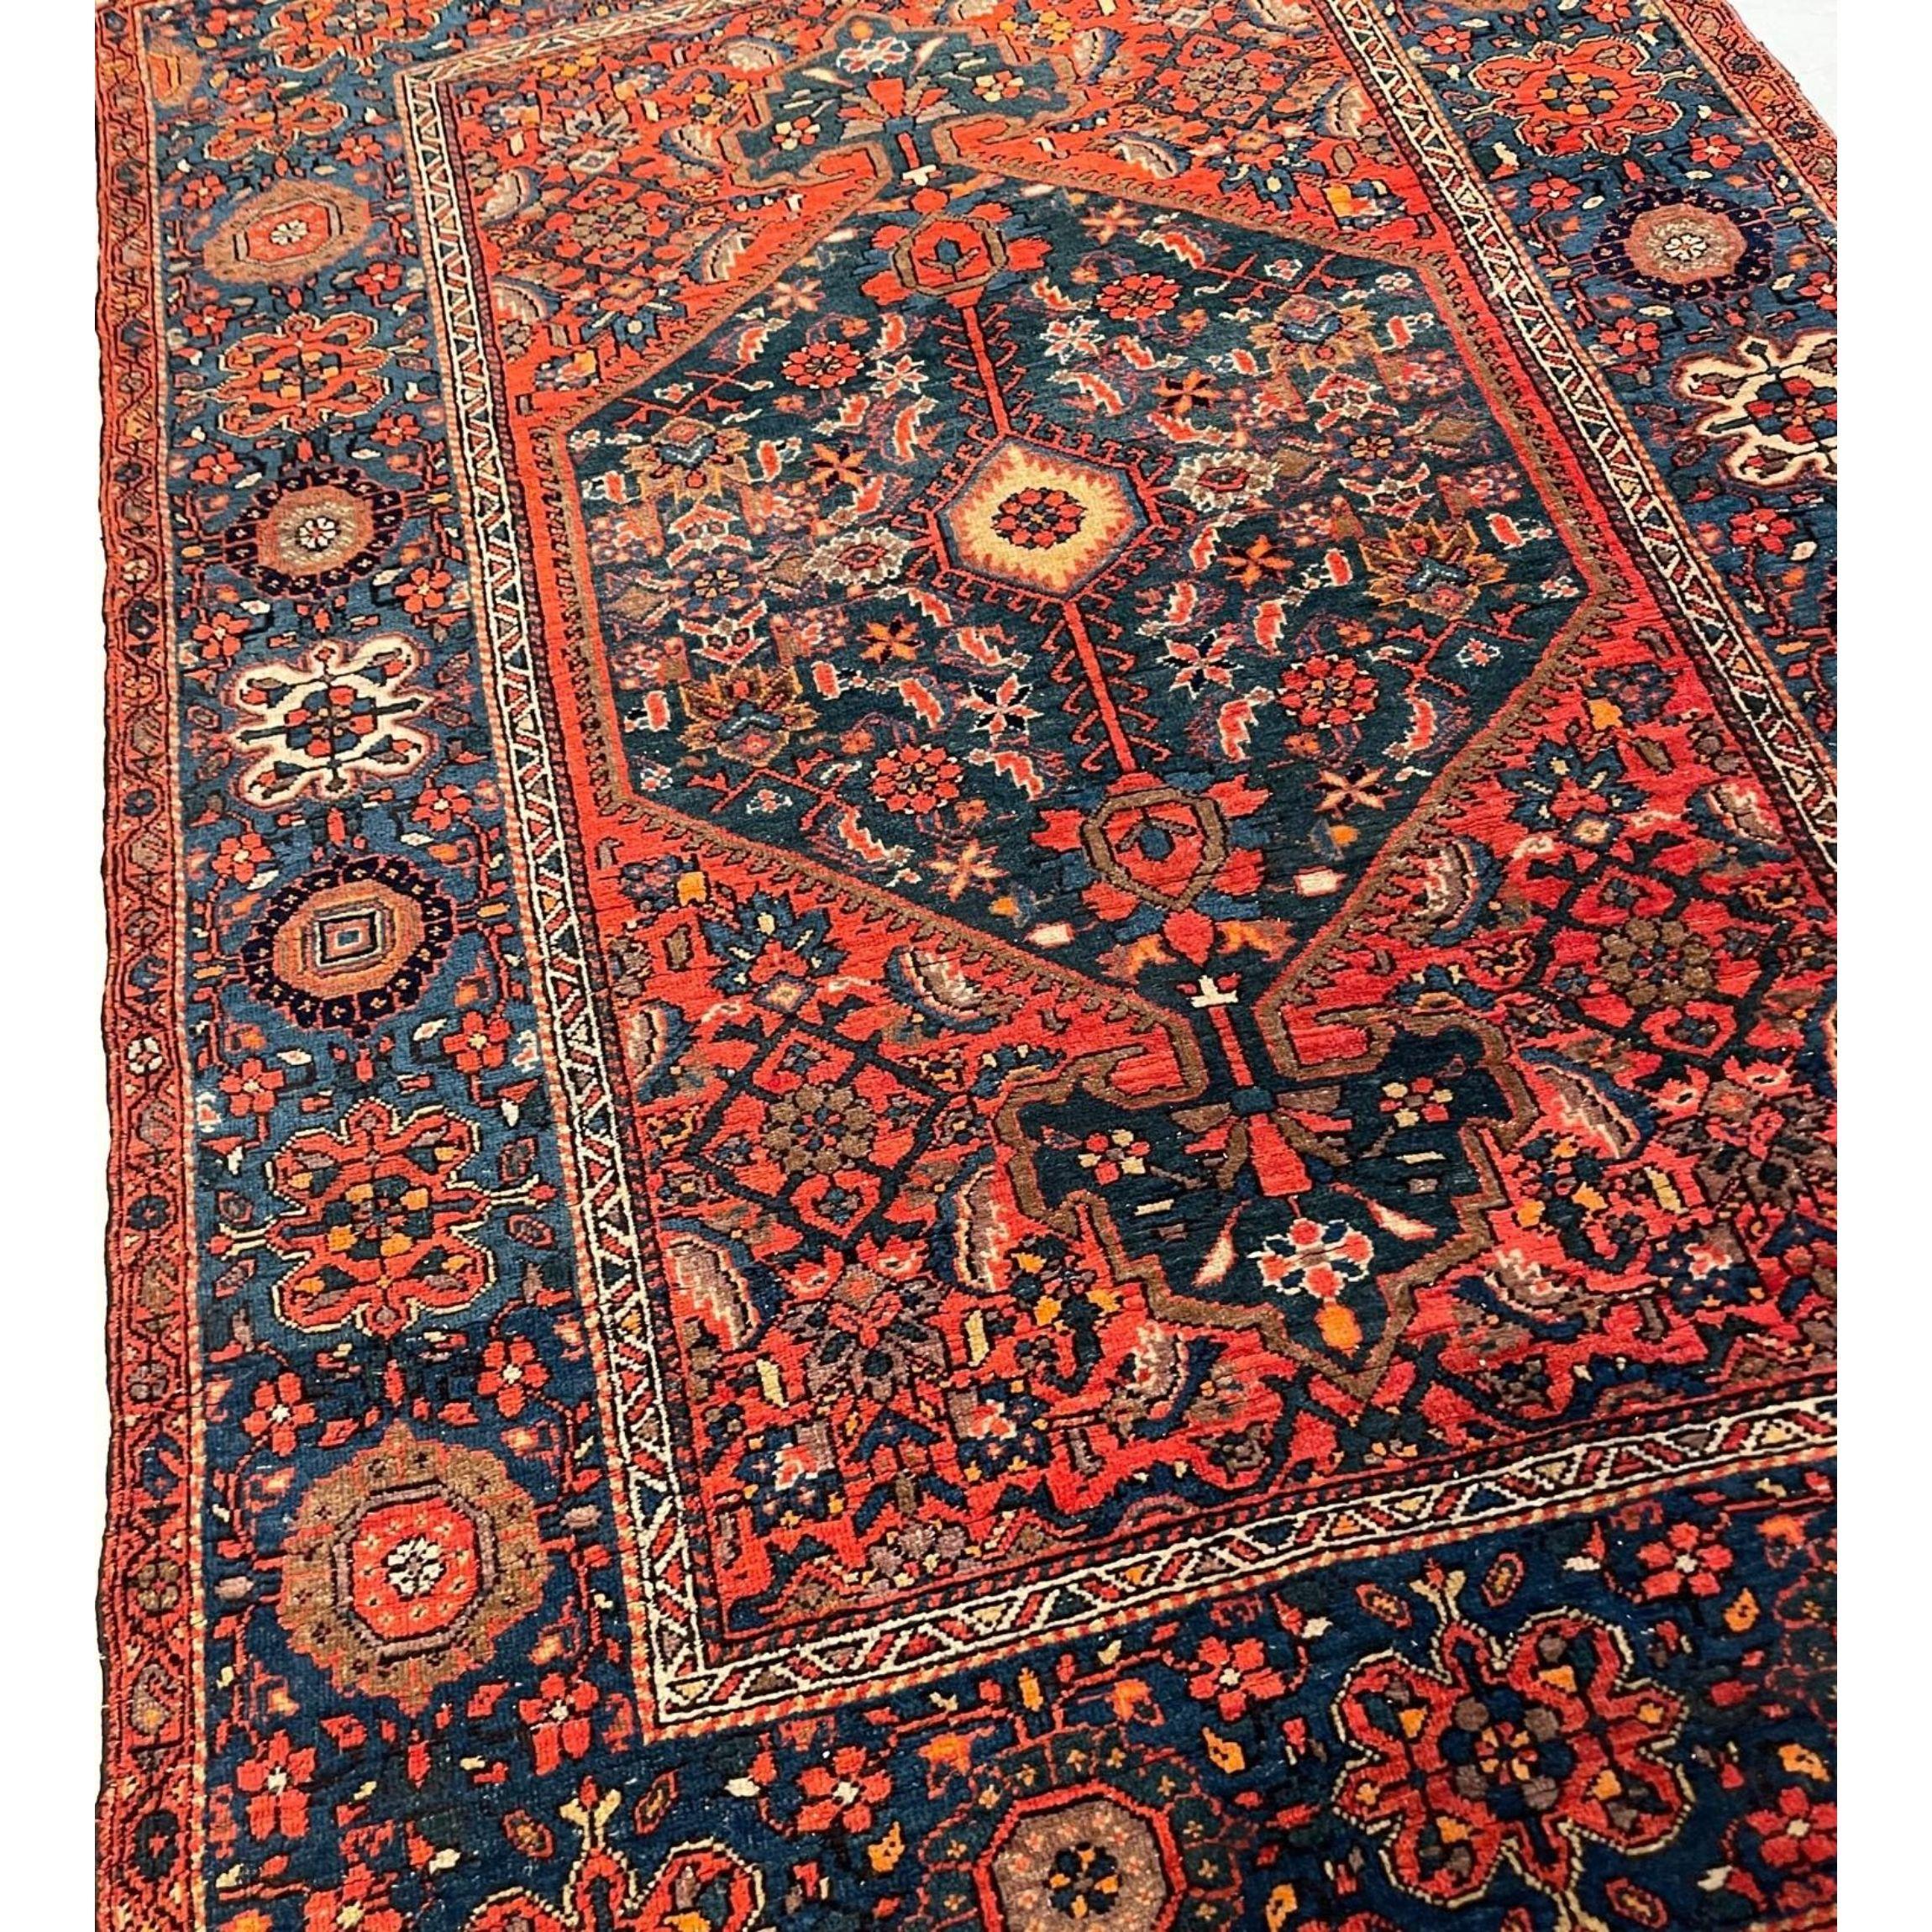 Tapis Sarouk - L'épaisseur du velours luxueux permet aux tapis Sarouk de résister au passage des piétons dans les couloirs, les salles communes et les foyers. Le style, la qualité et la durabilité des tapis Sarouk les ont rendus extrêmement